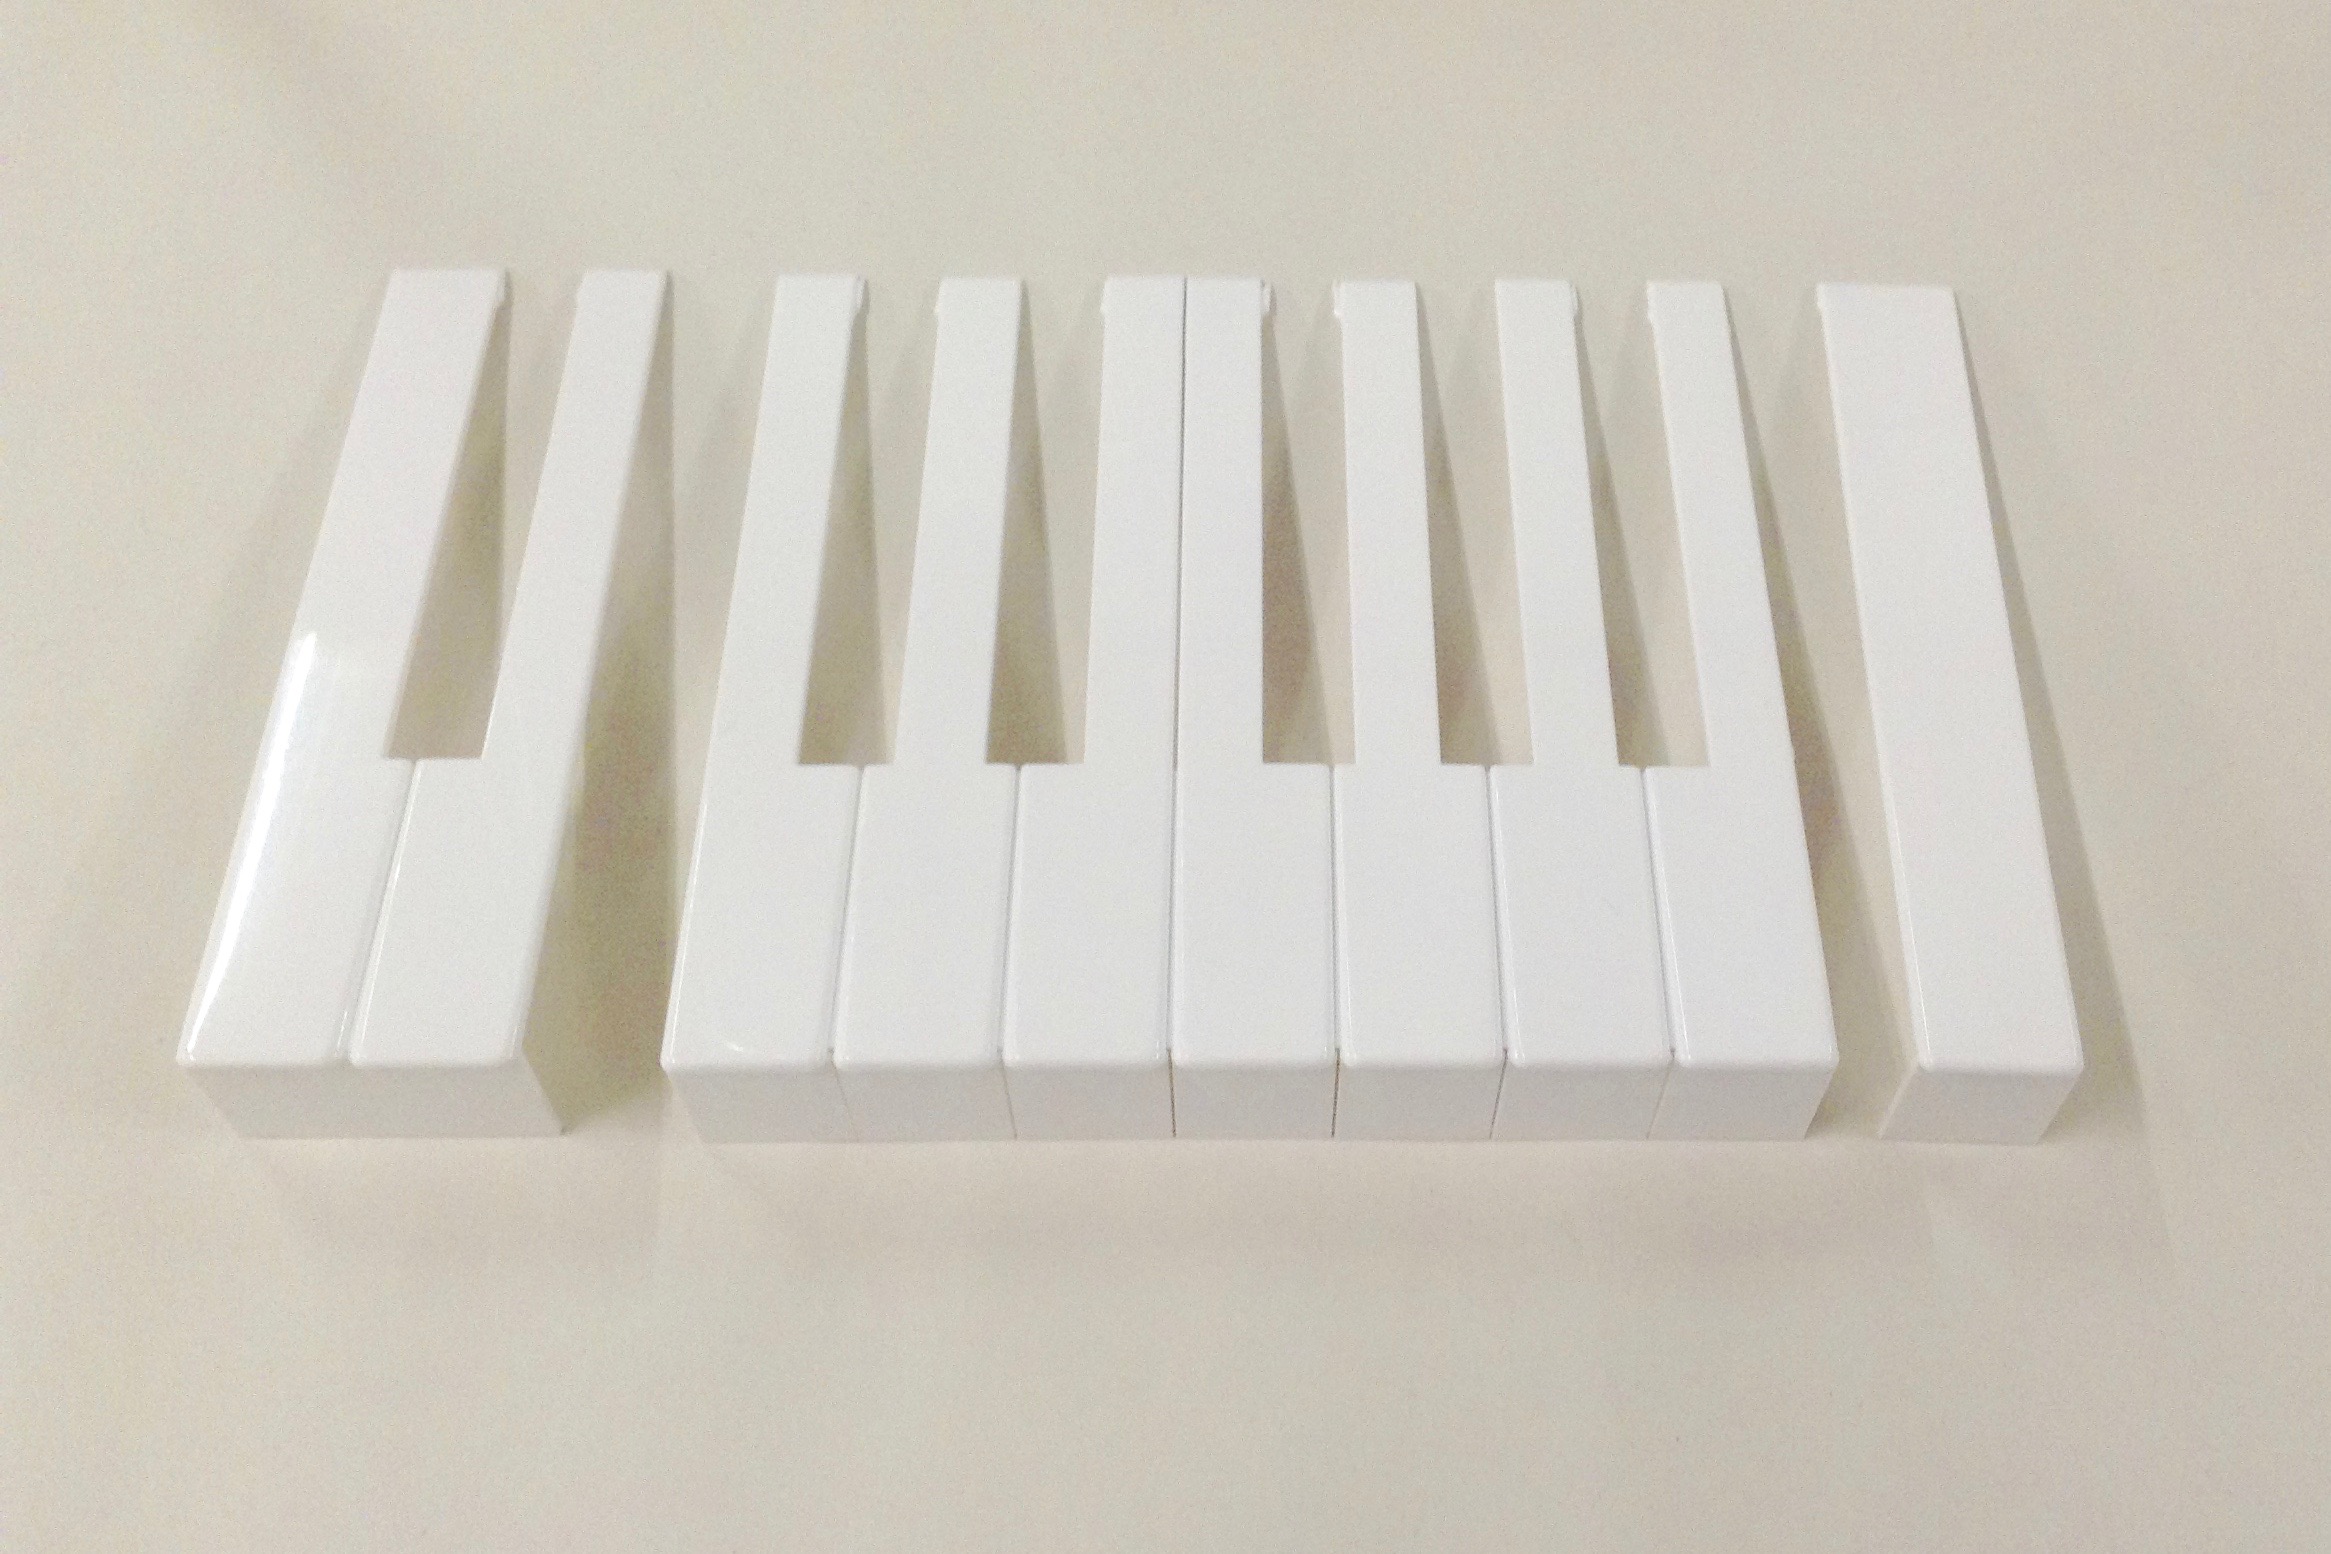 Taffijn Klavierbeleg wit met front